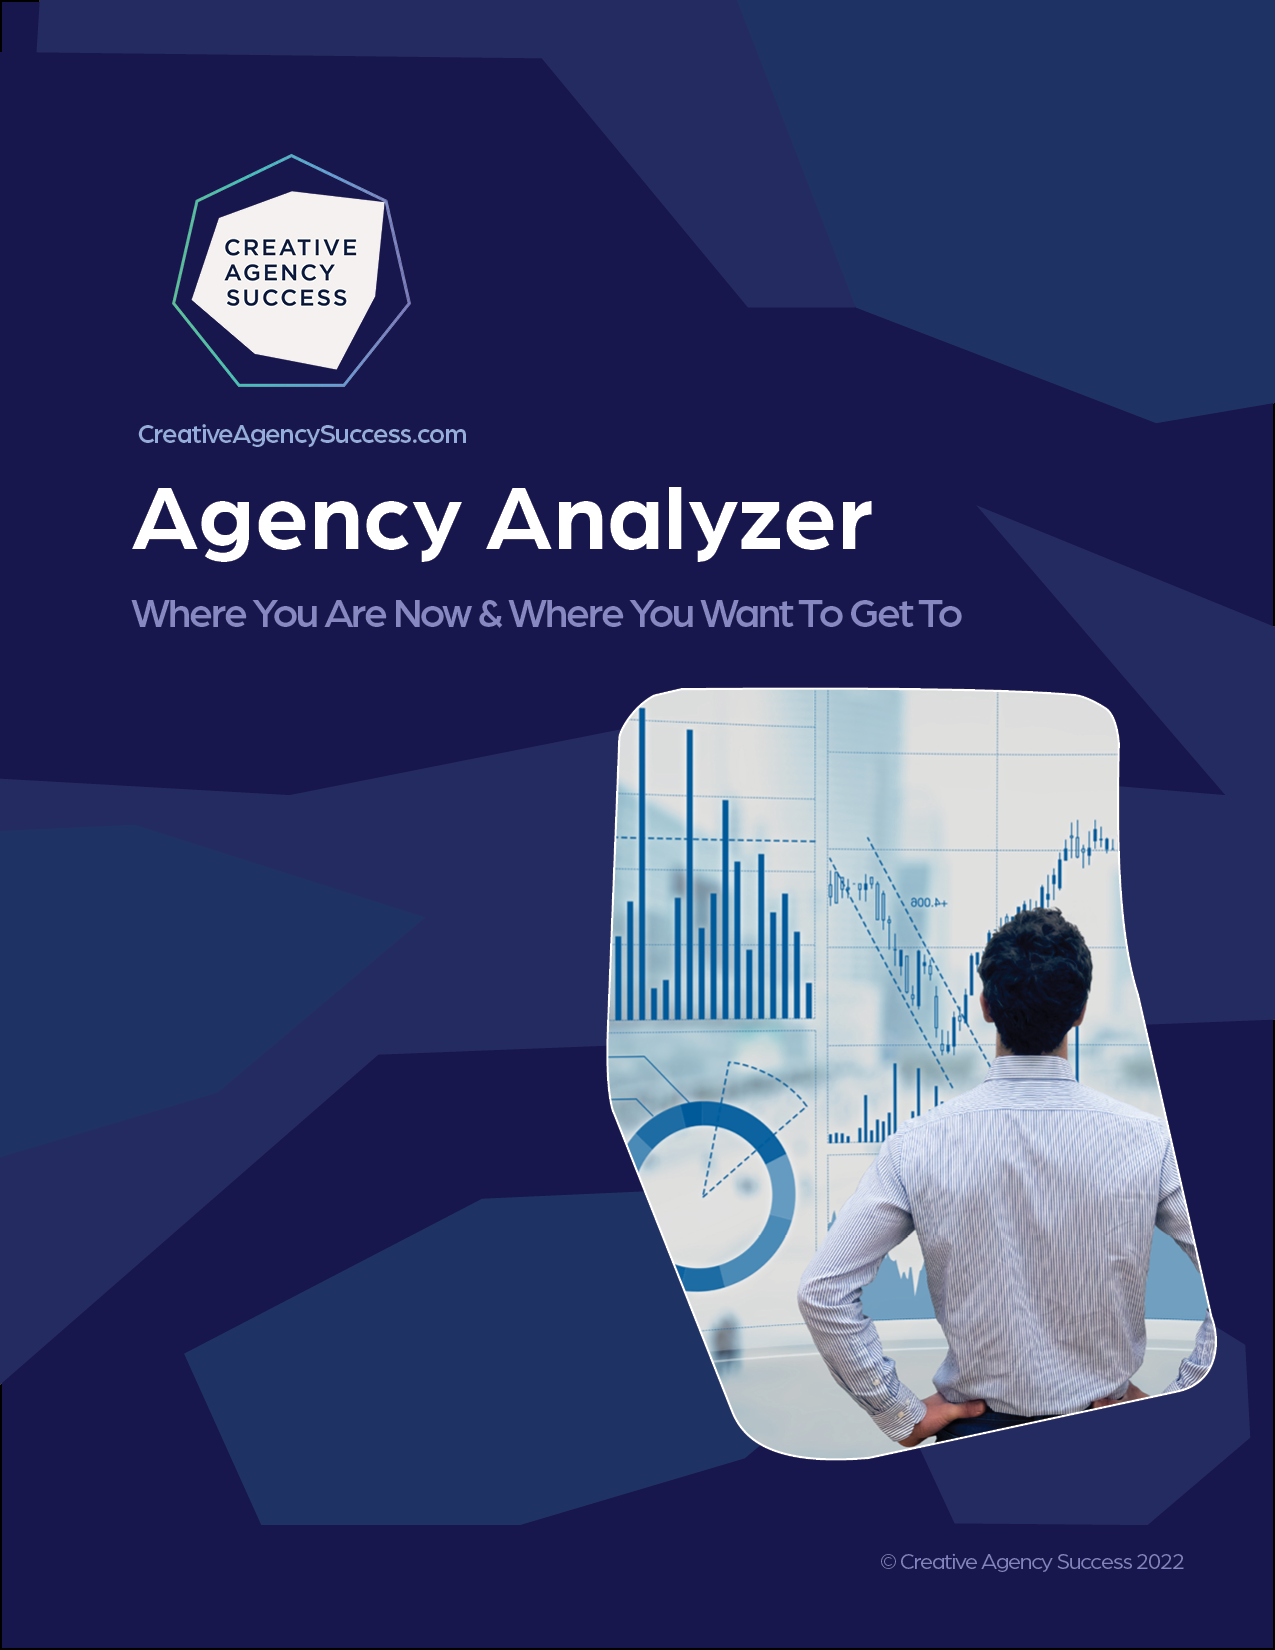 Agency analyzer